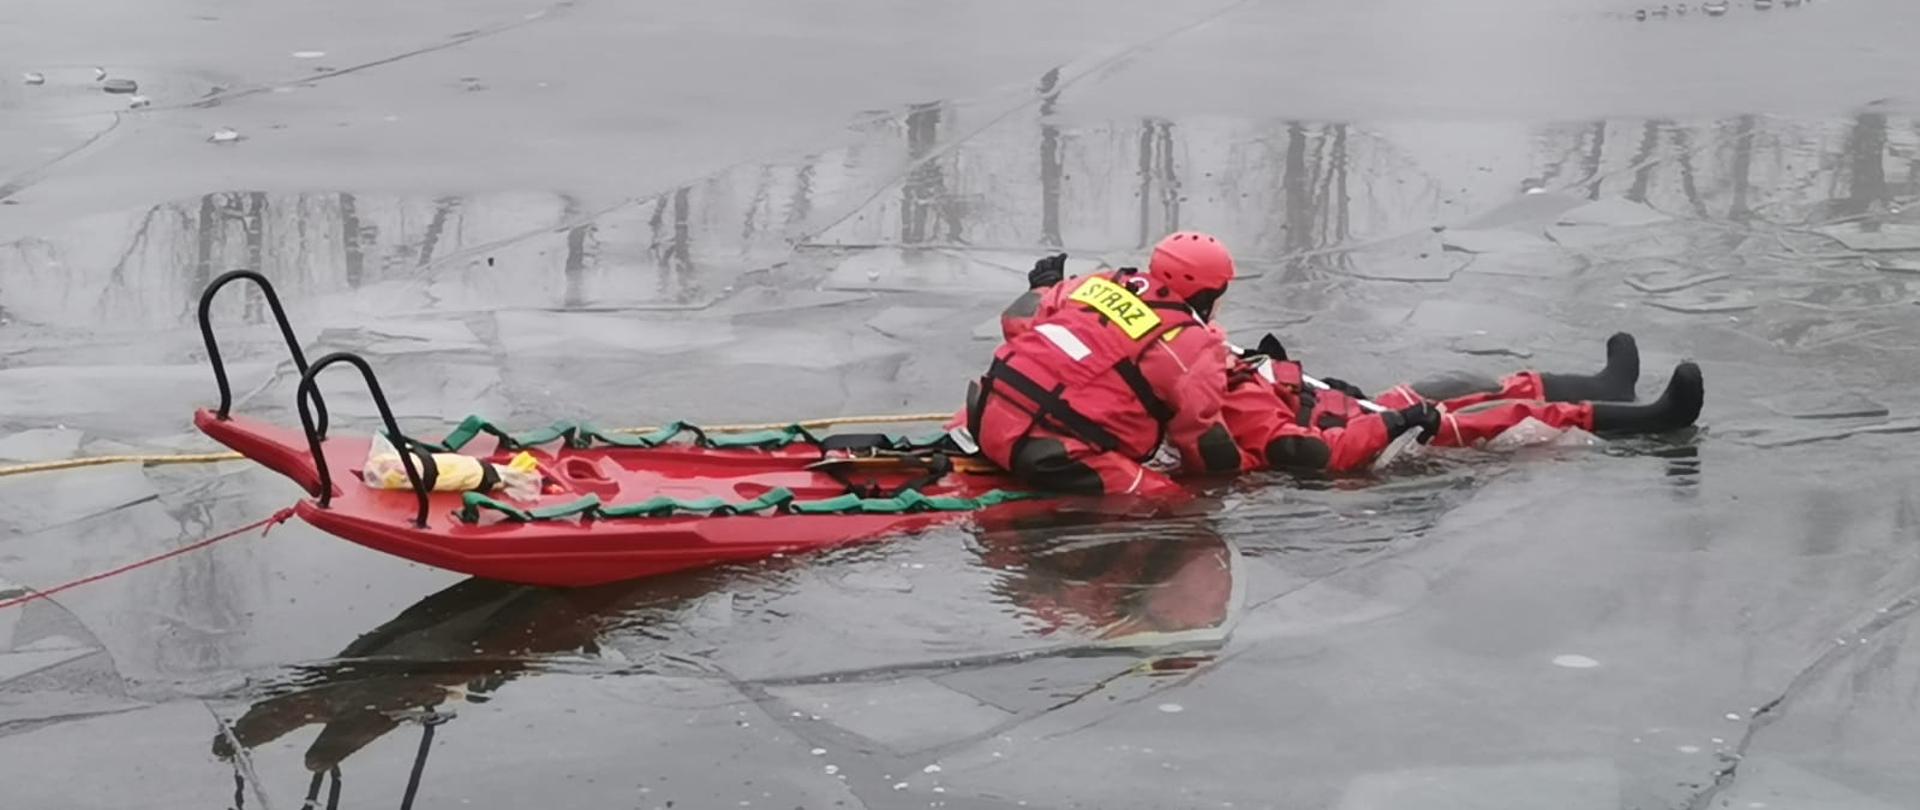 Ratownik podbiera osobę z pękniętego lodu na sanie wodno-lodowe